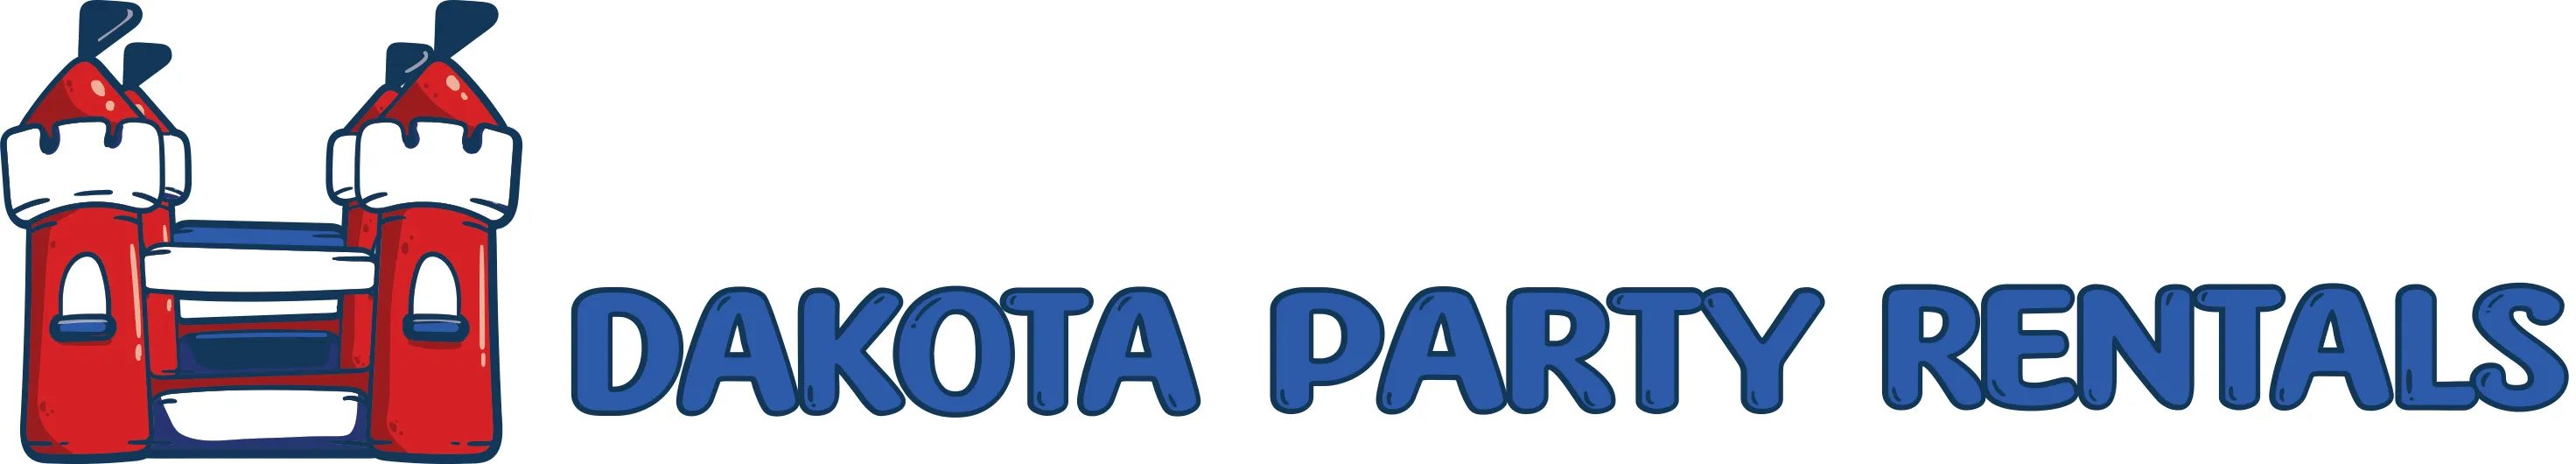 Dakota Party Rentals